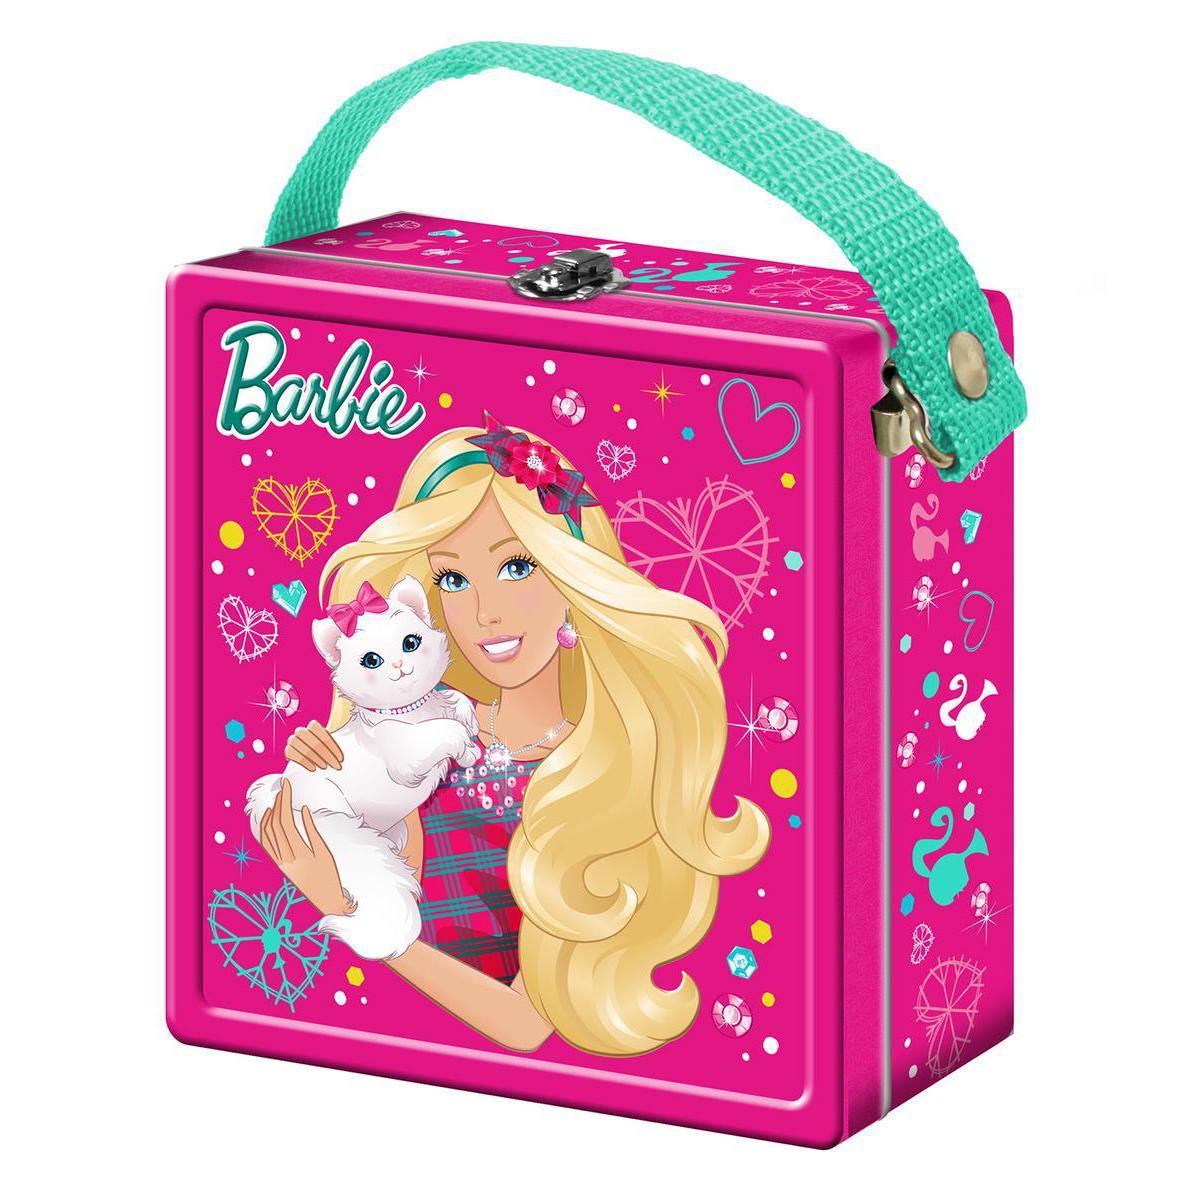 Valisette Barbie et bonbons - Métal - 16 x 9 x H 21 cm - Multicolore